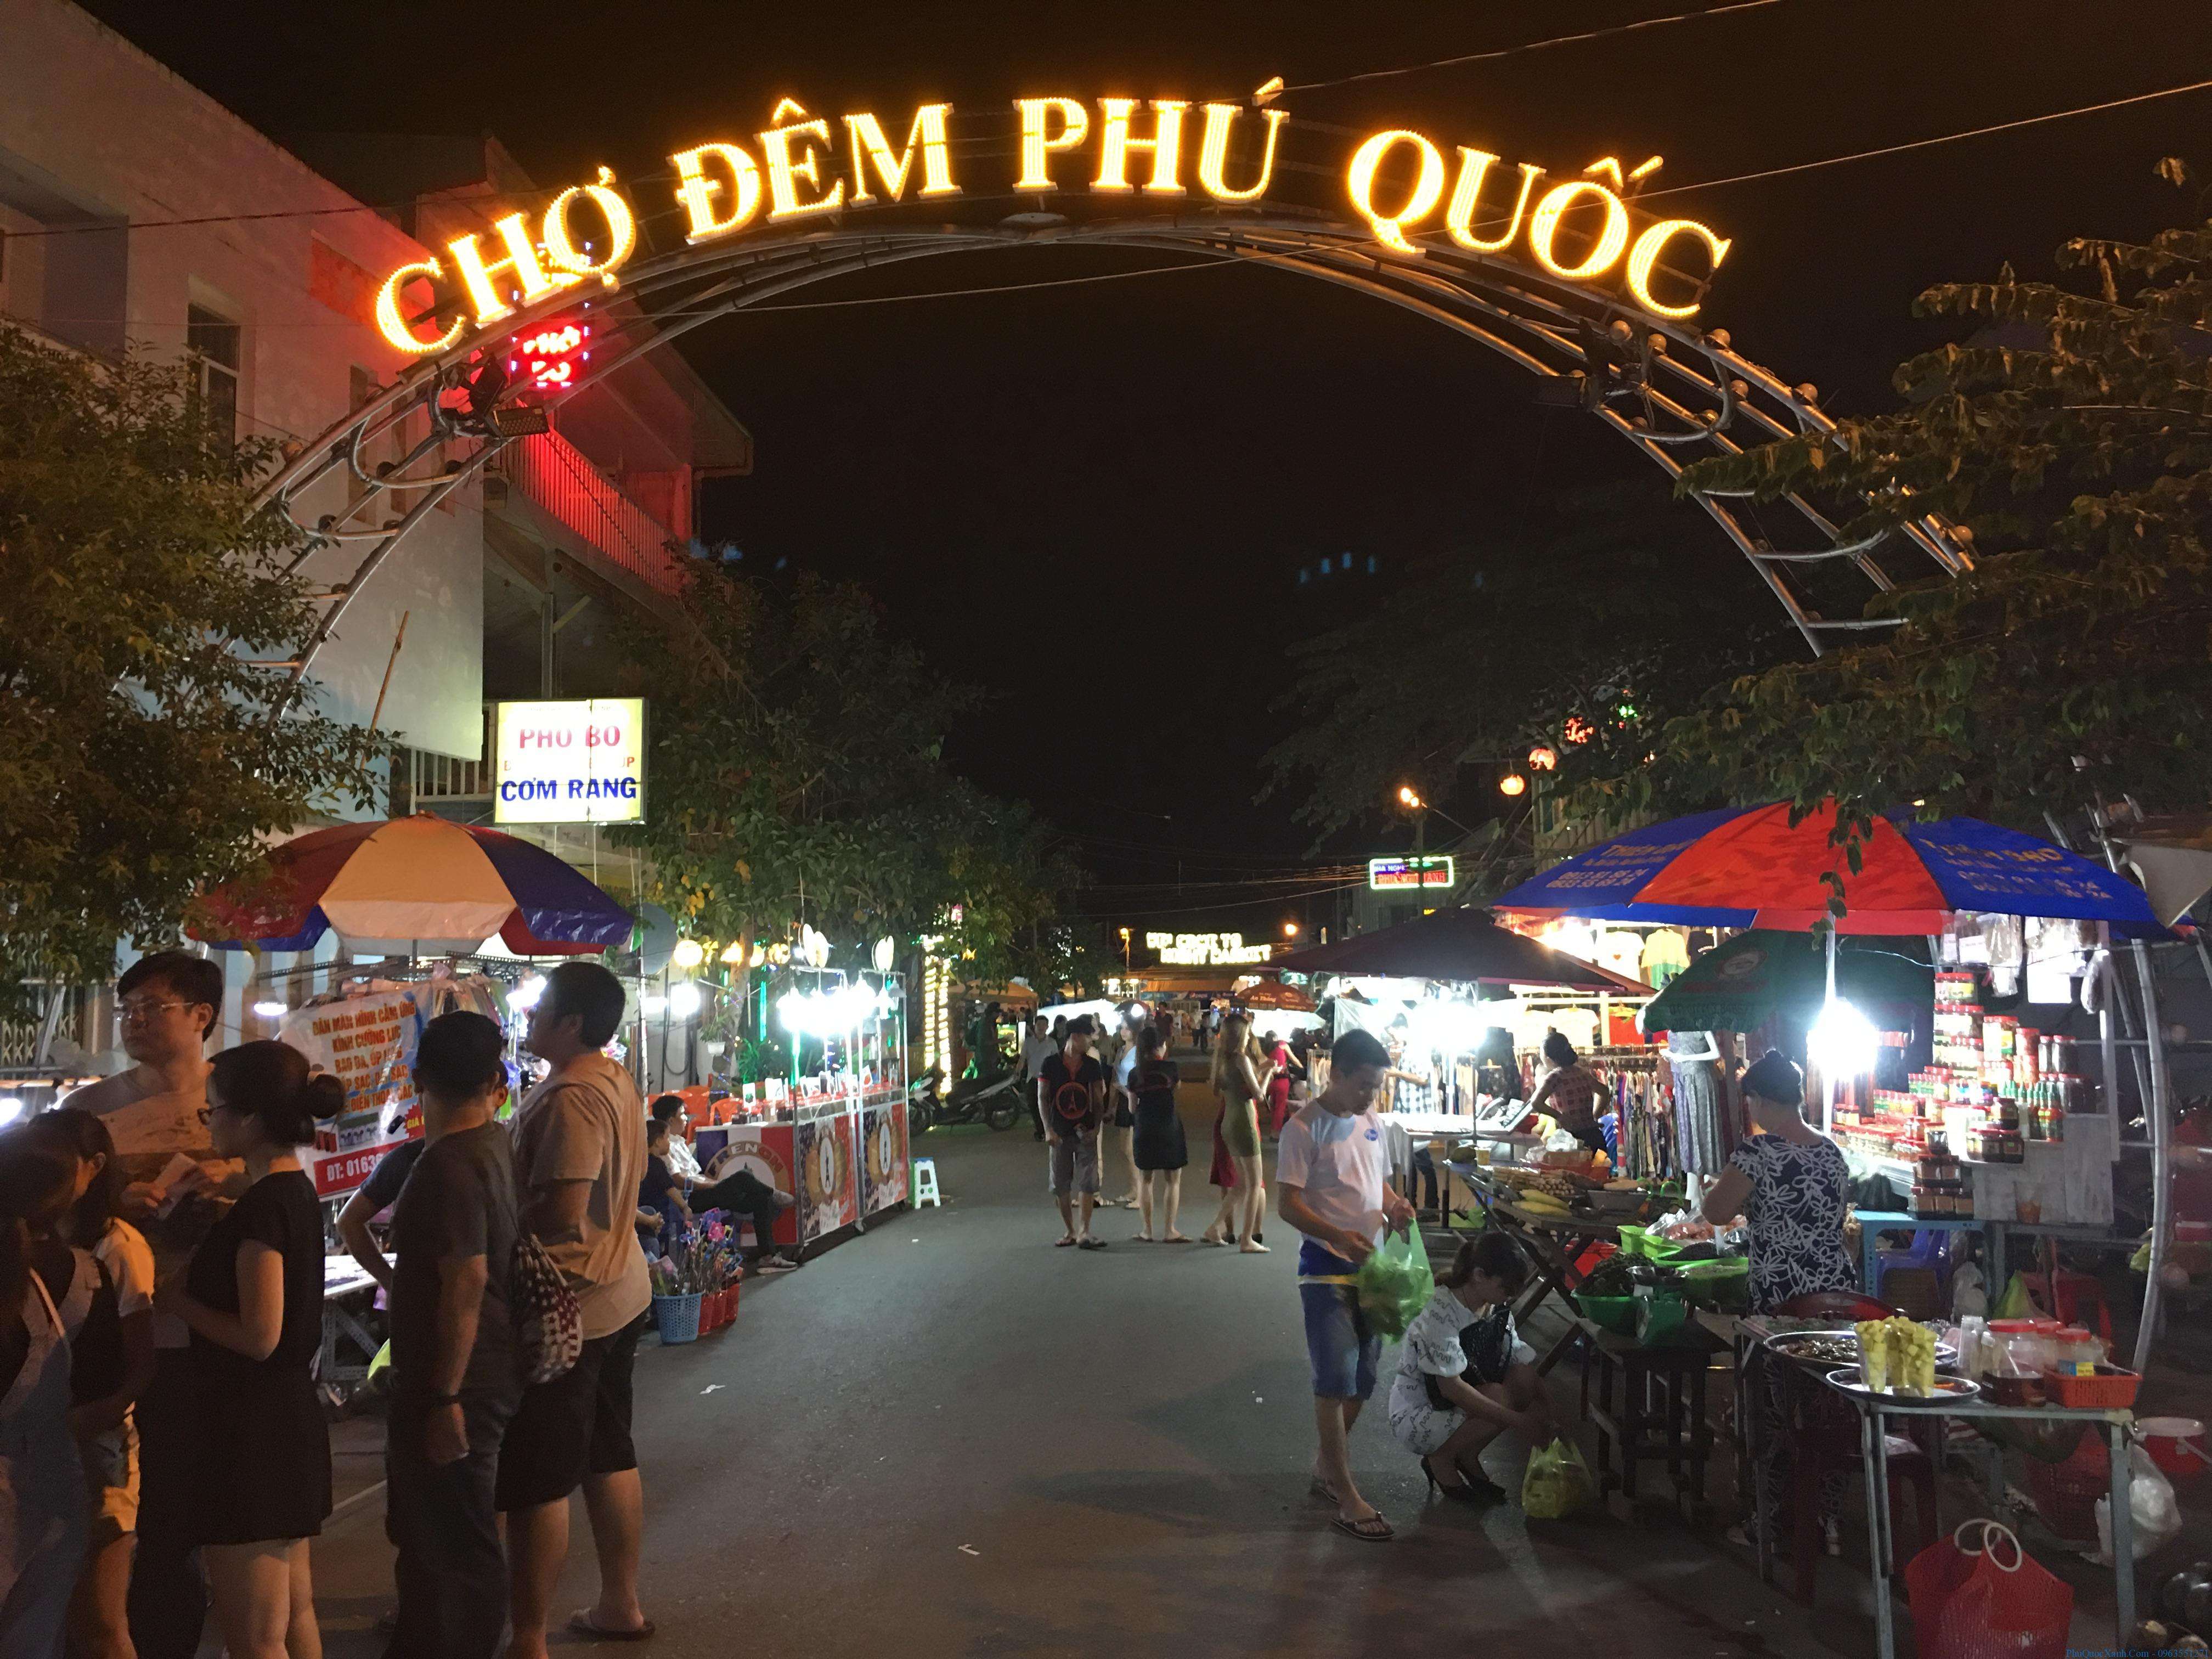 Chợ đêm Phú Quốc nổi tiếng với nhiều món ăn vặt độc đáo